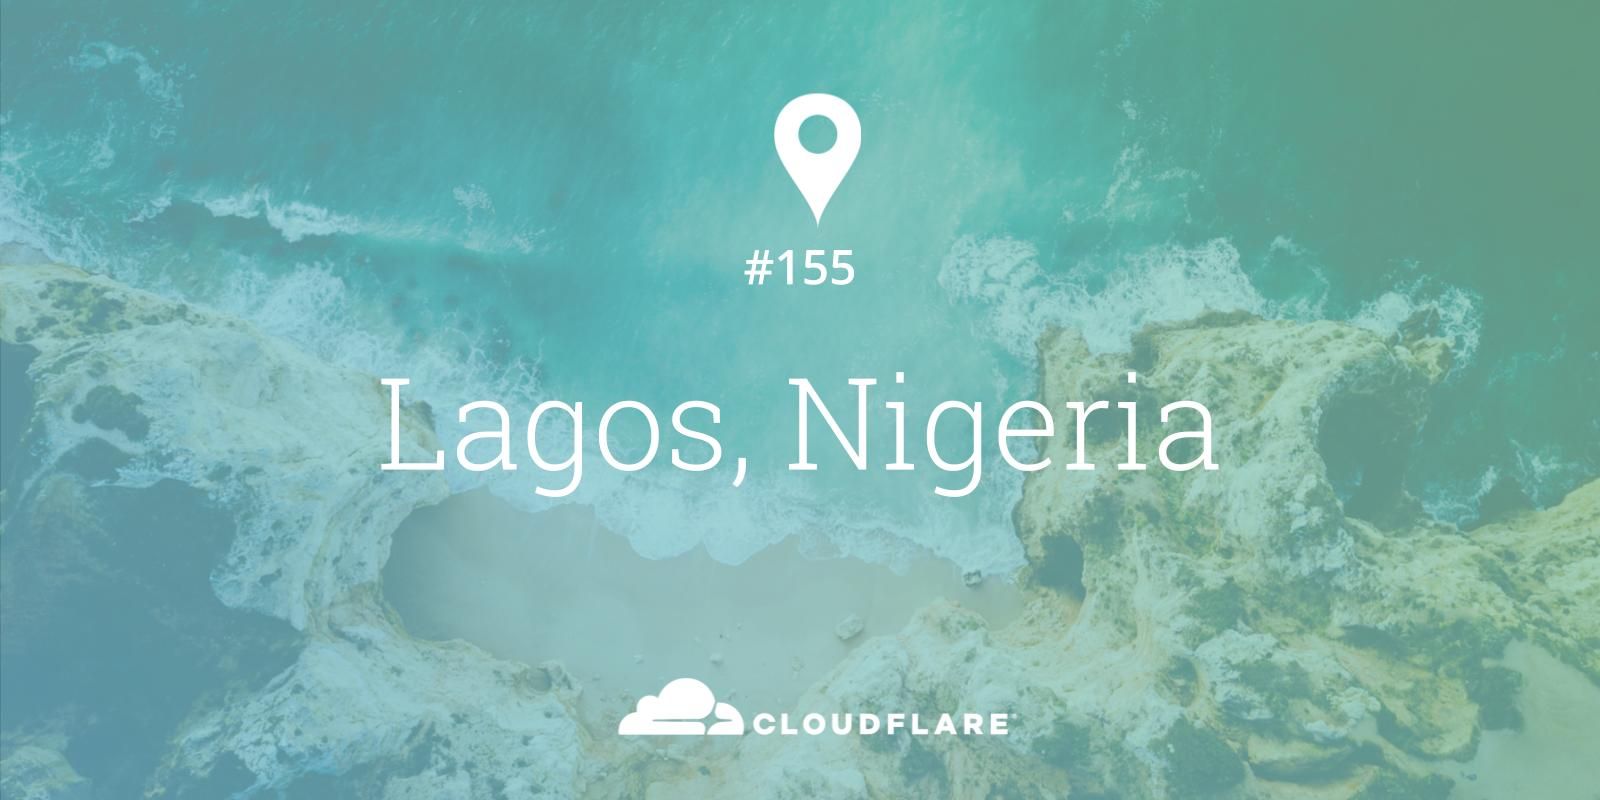 Lagos, Nigeria - Cloudflare’s 155th city